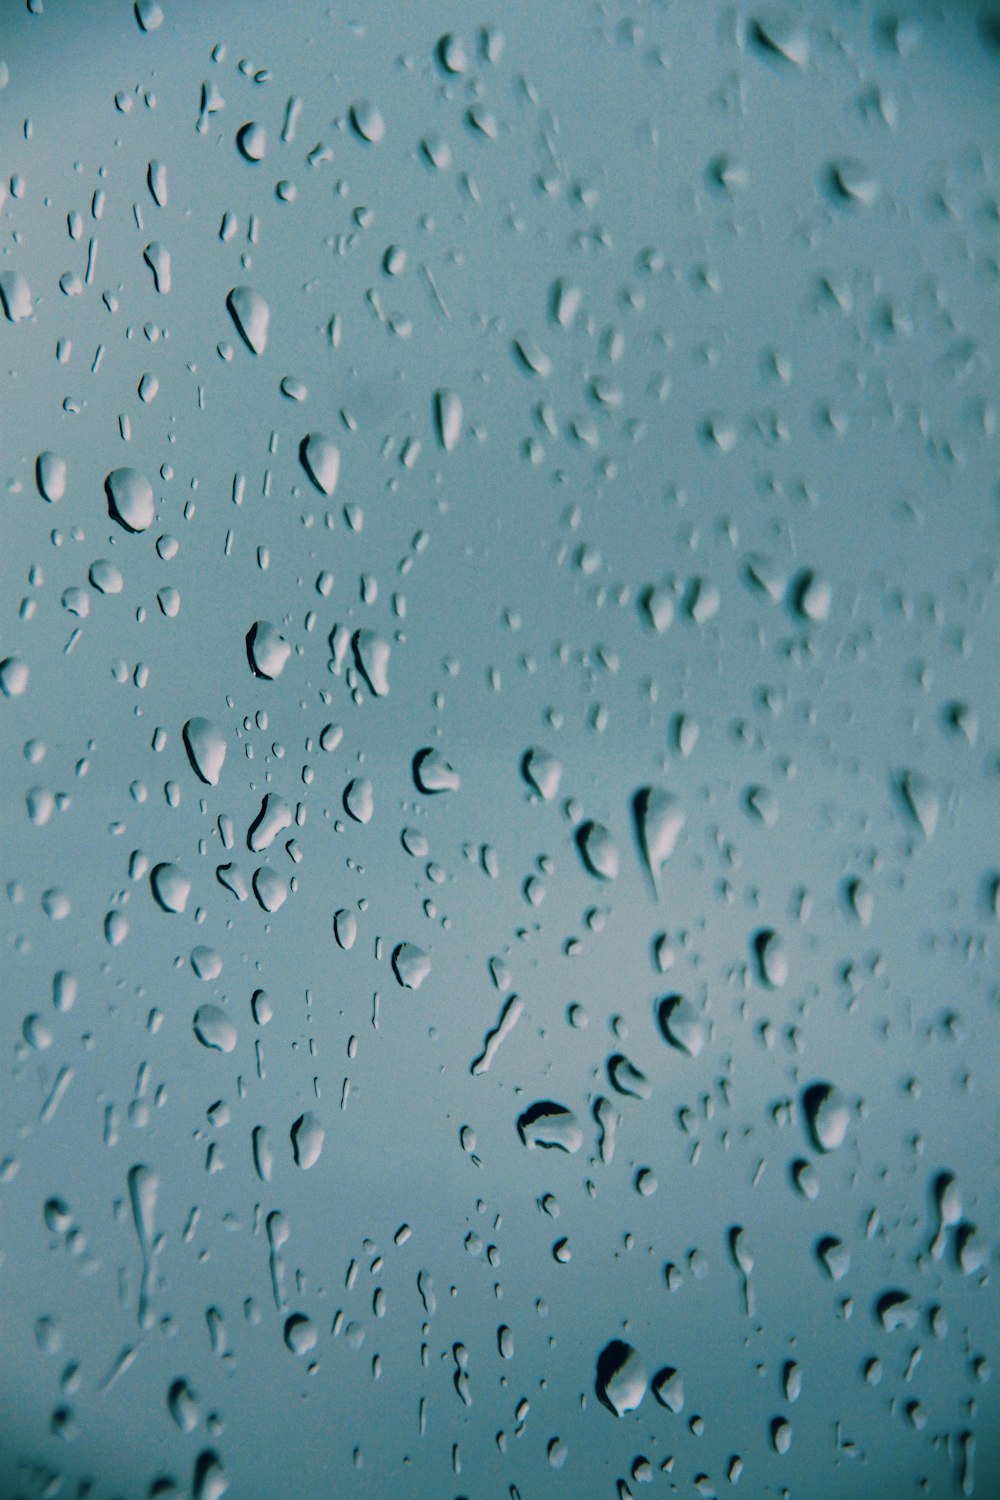 um close up de gotículas de água em uma superfície azul